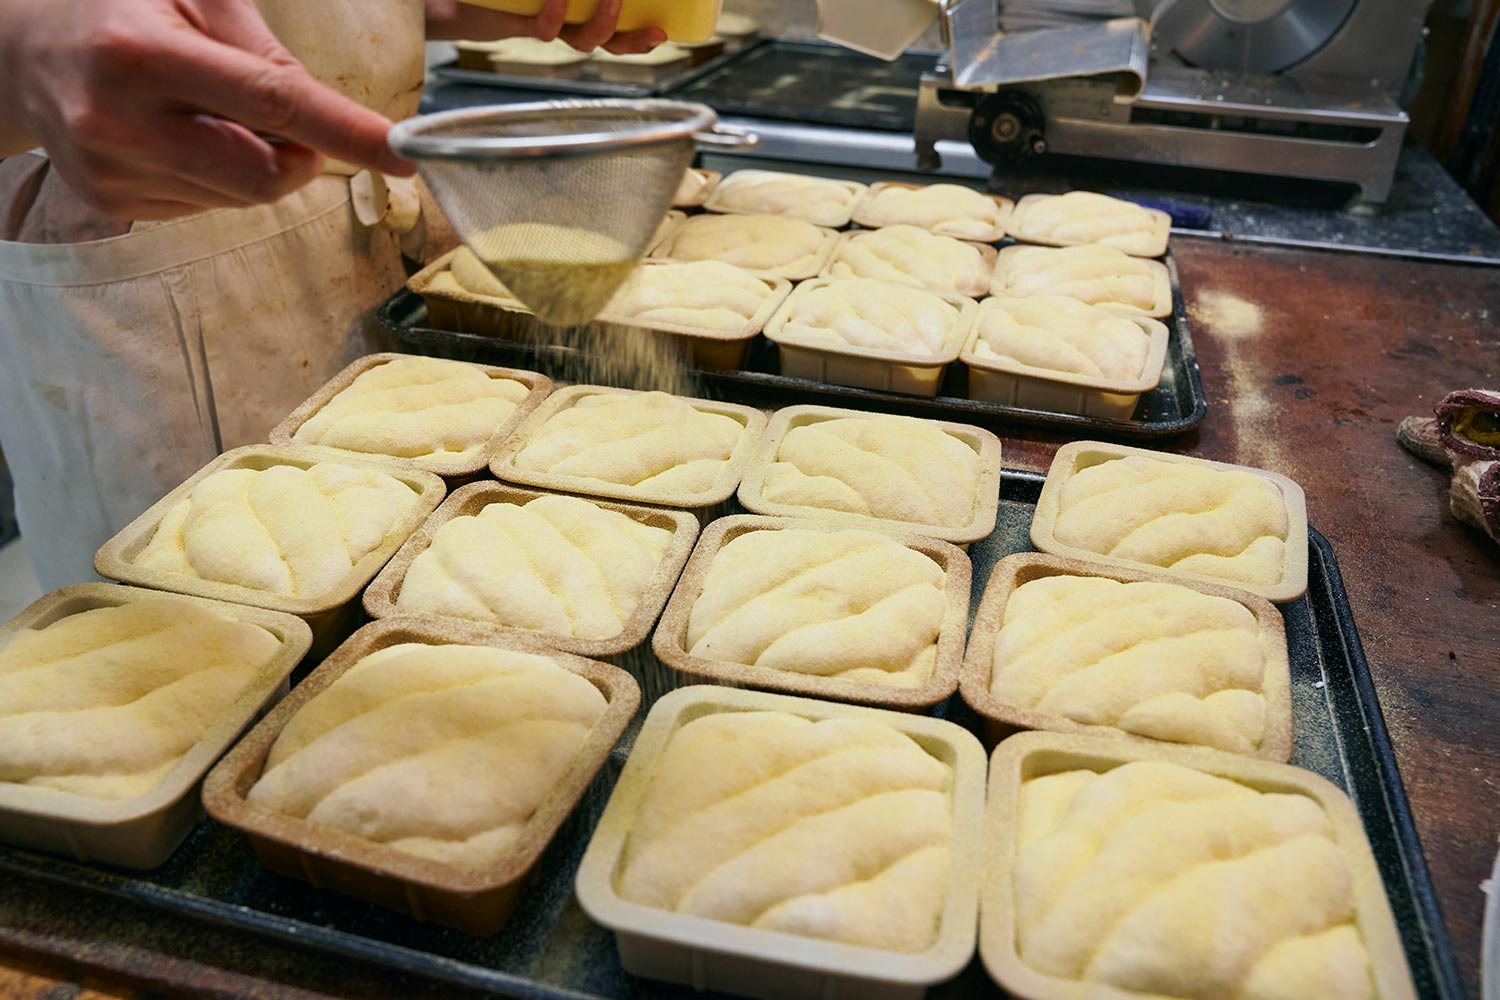 売り場の奥の工房では次々とパンが作られる。